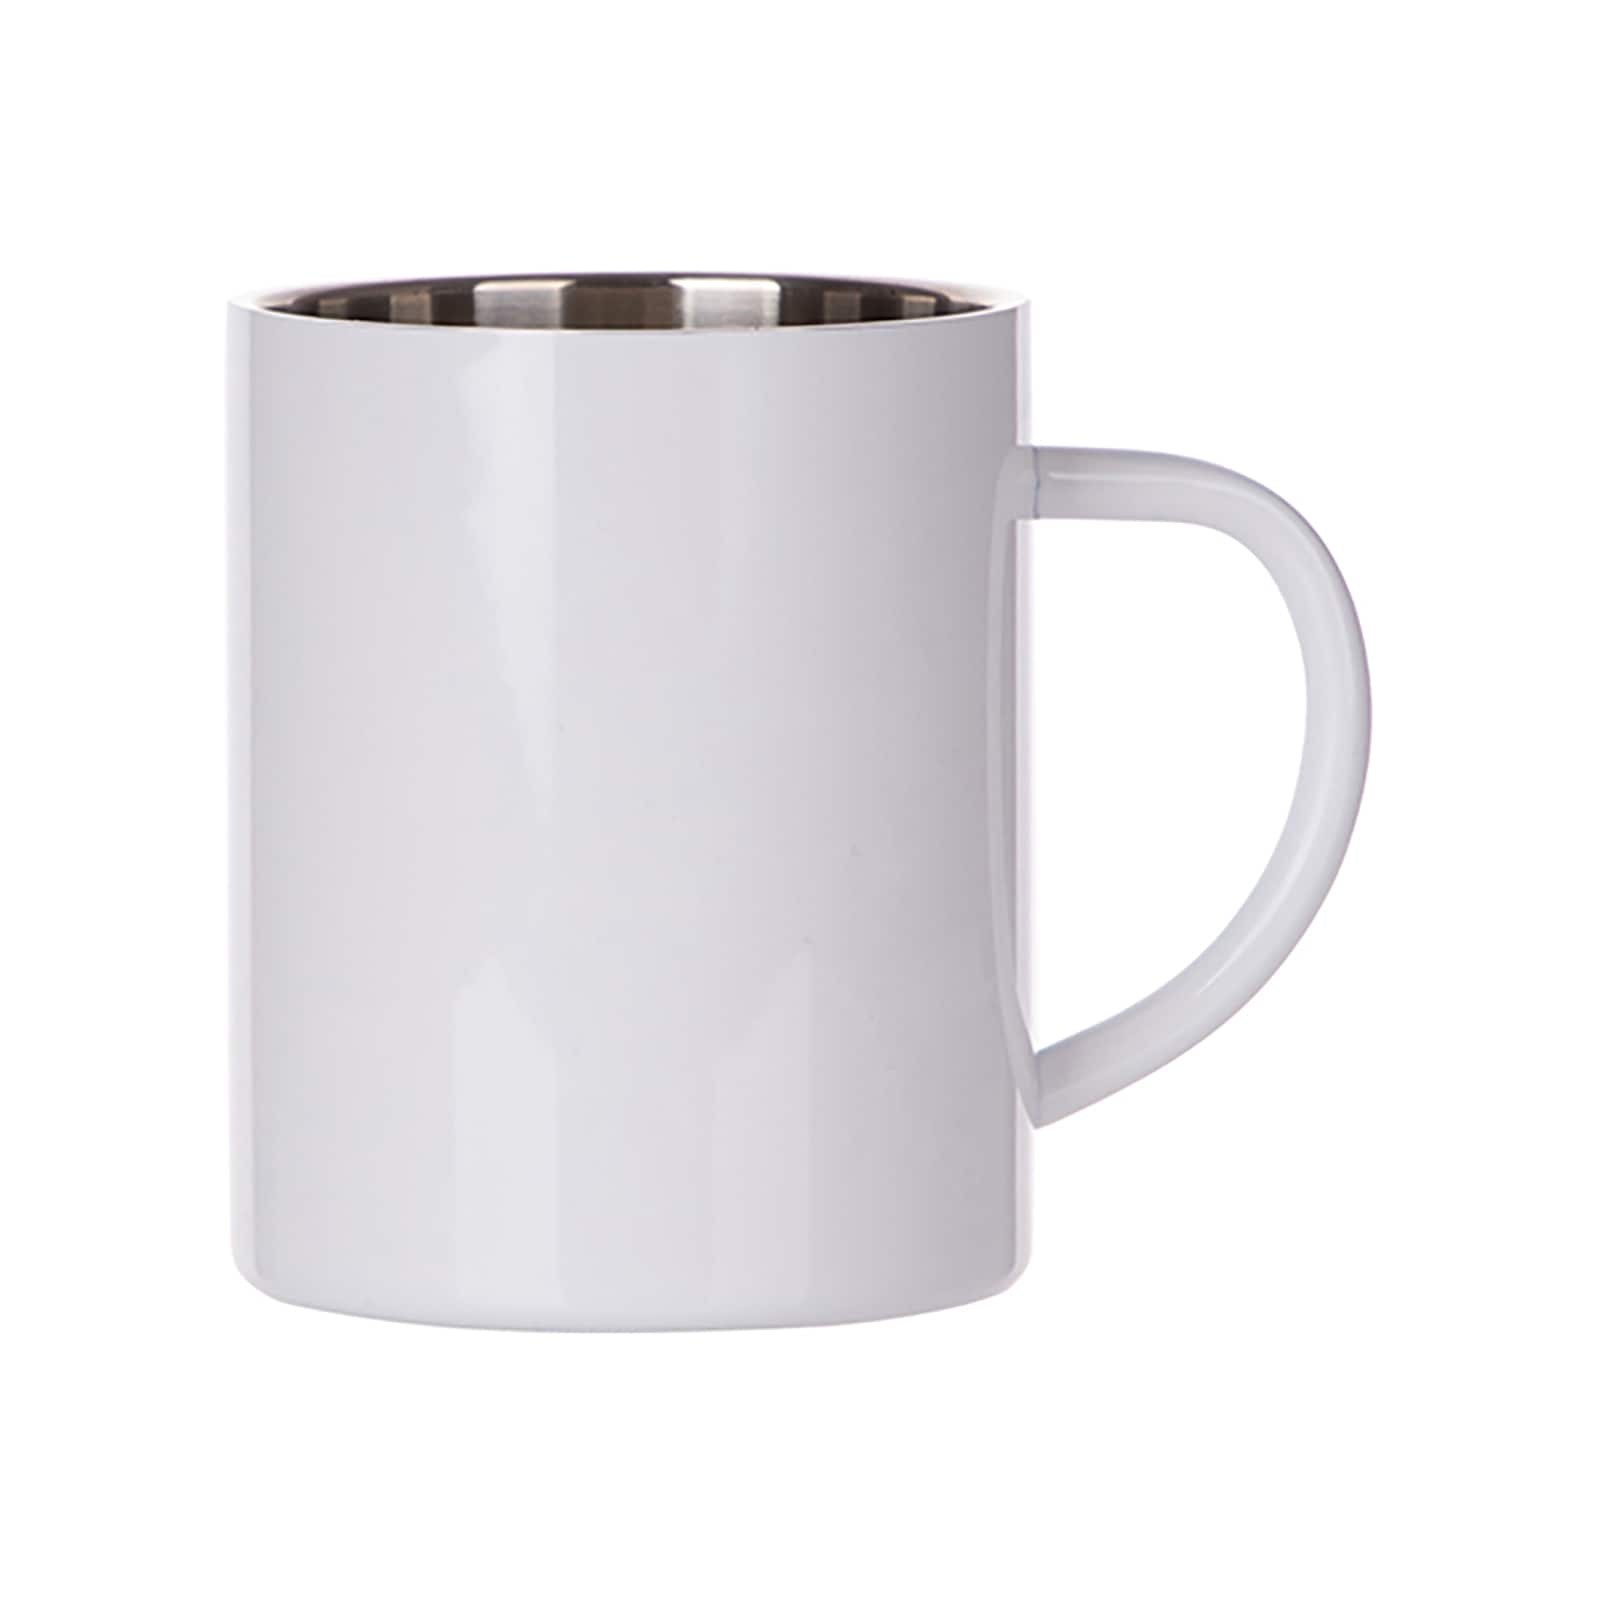 Craft Express White Ceramic Mugs, 6ct.